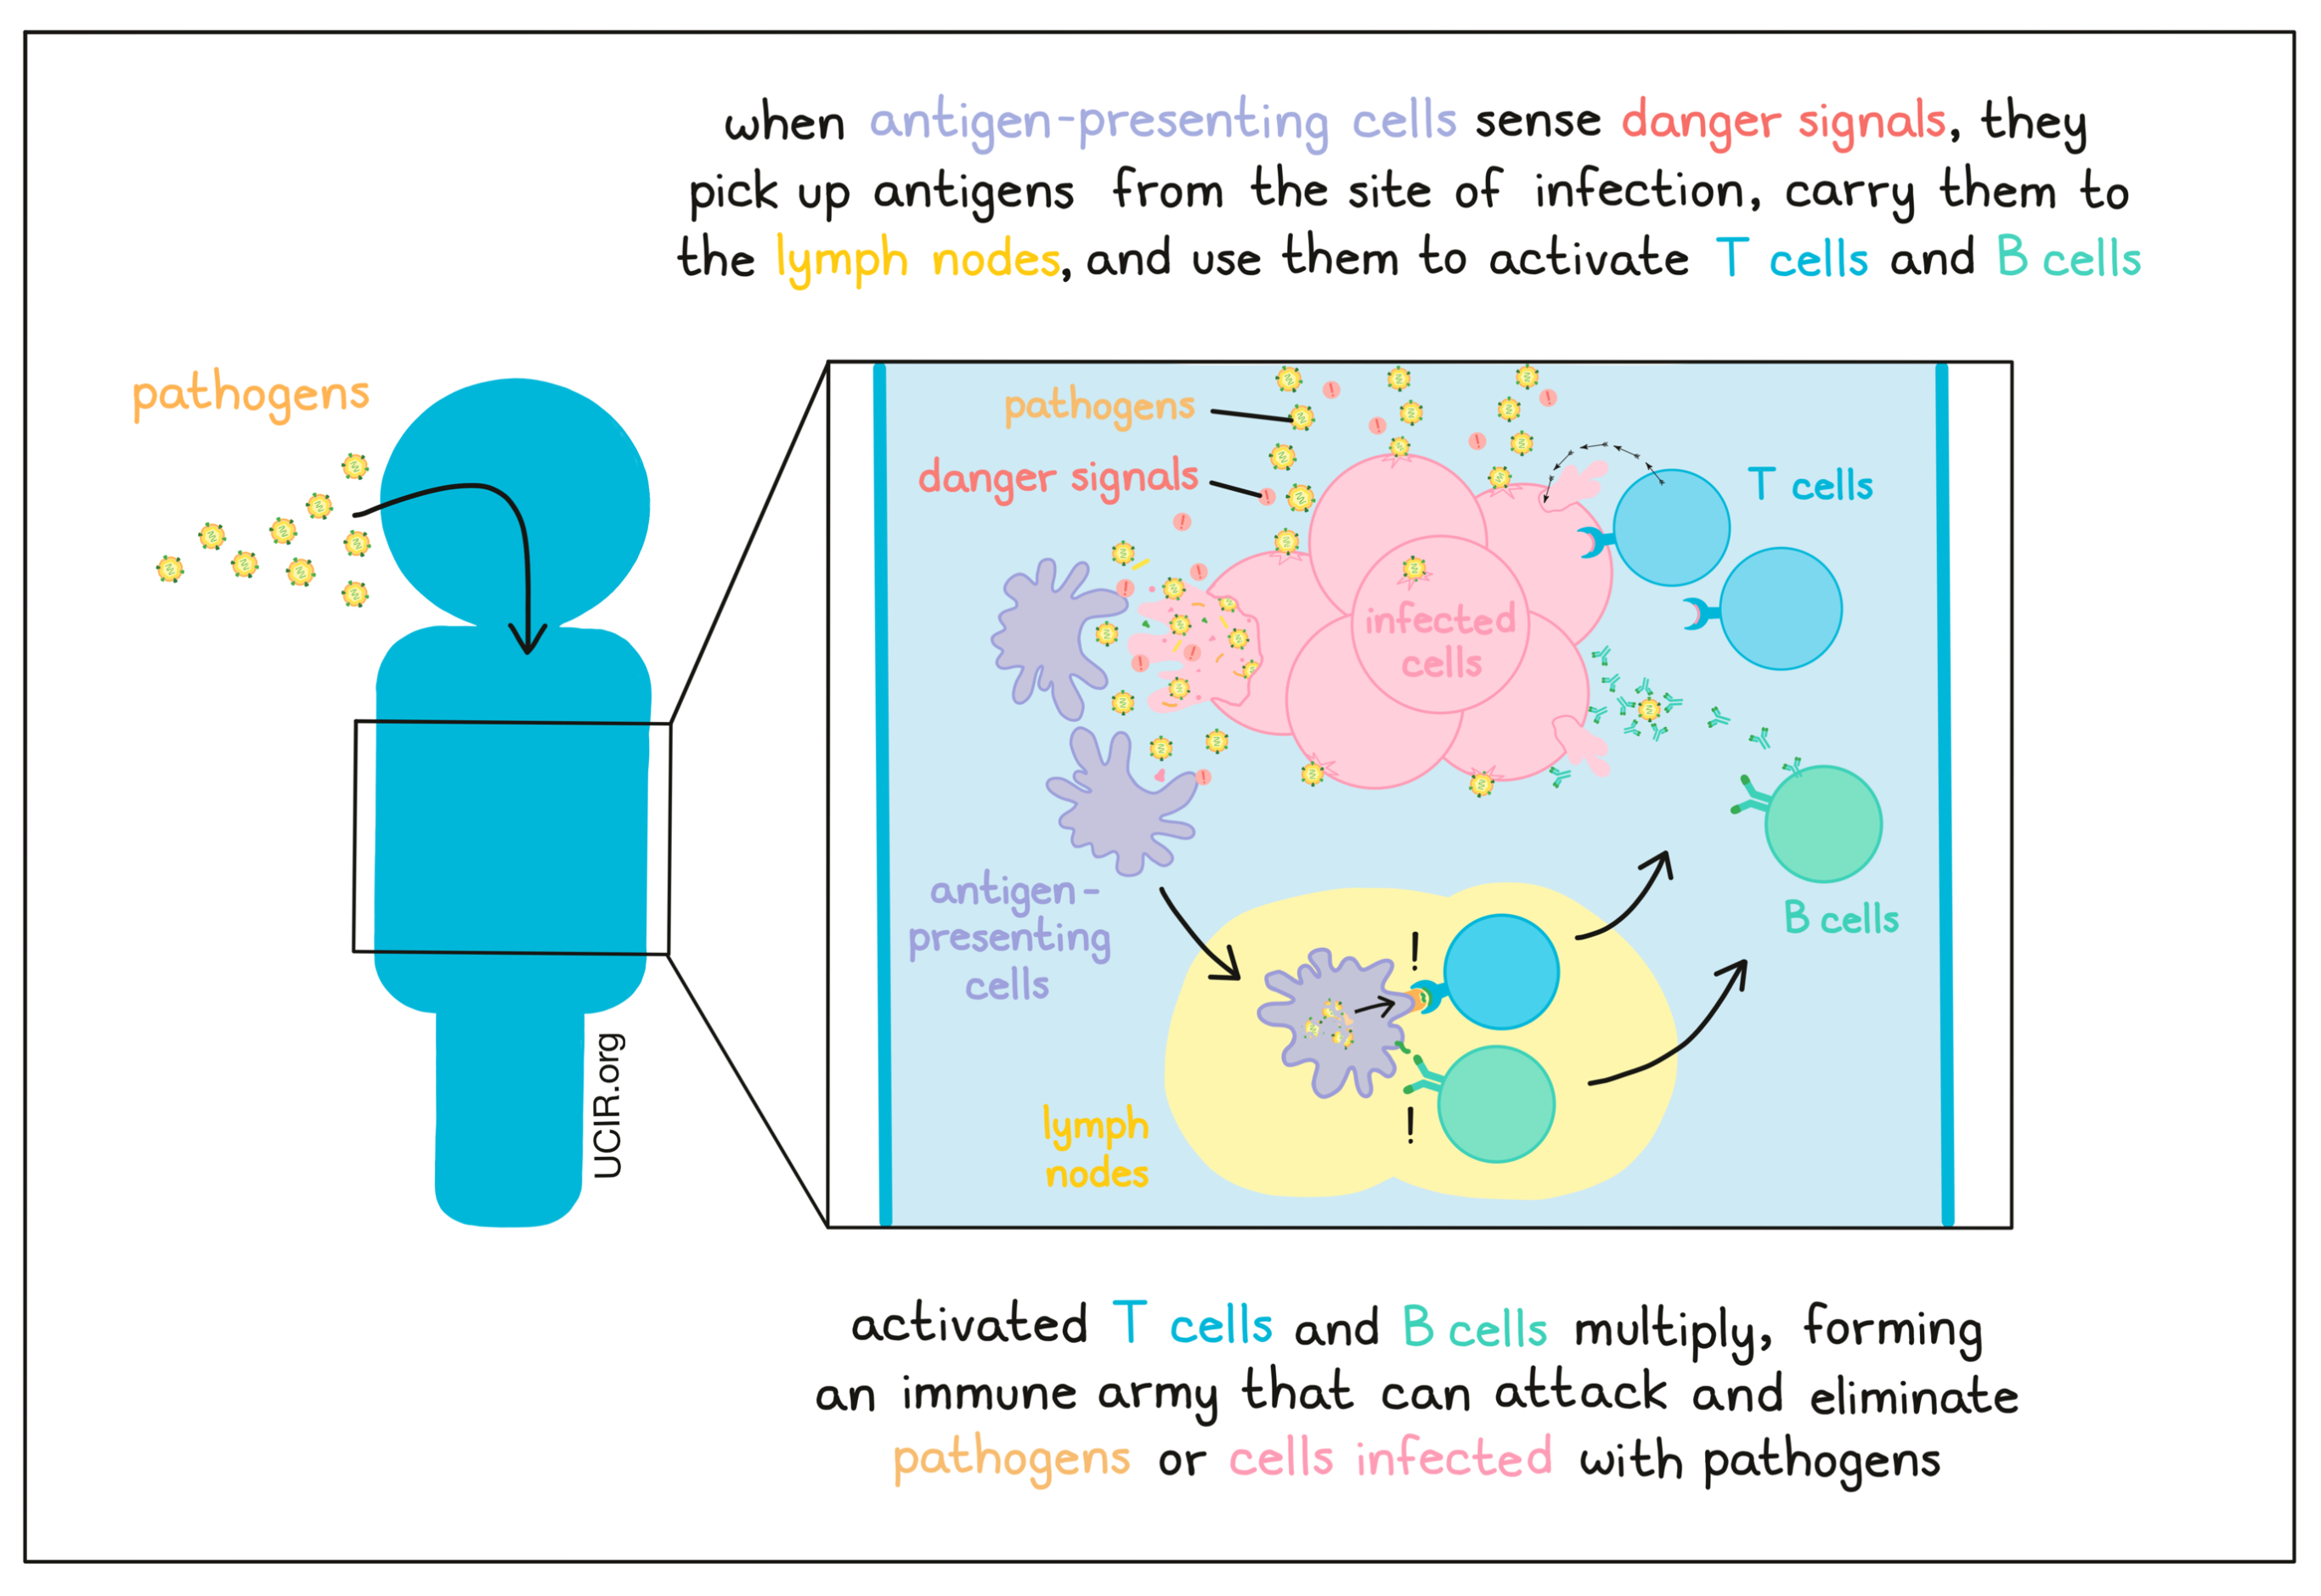 Illustration showing how antigen-presenting cells sense danger signals